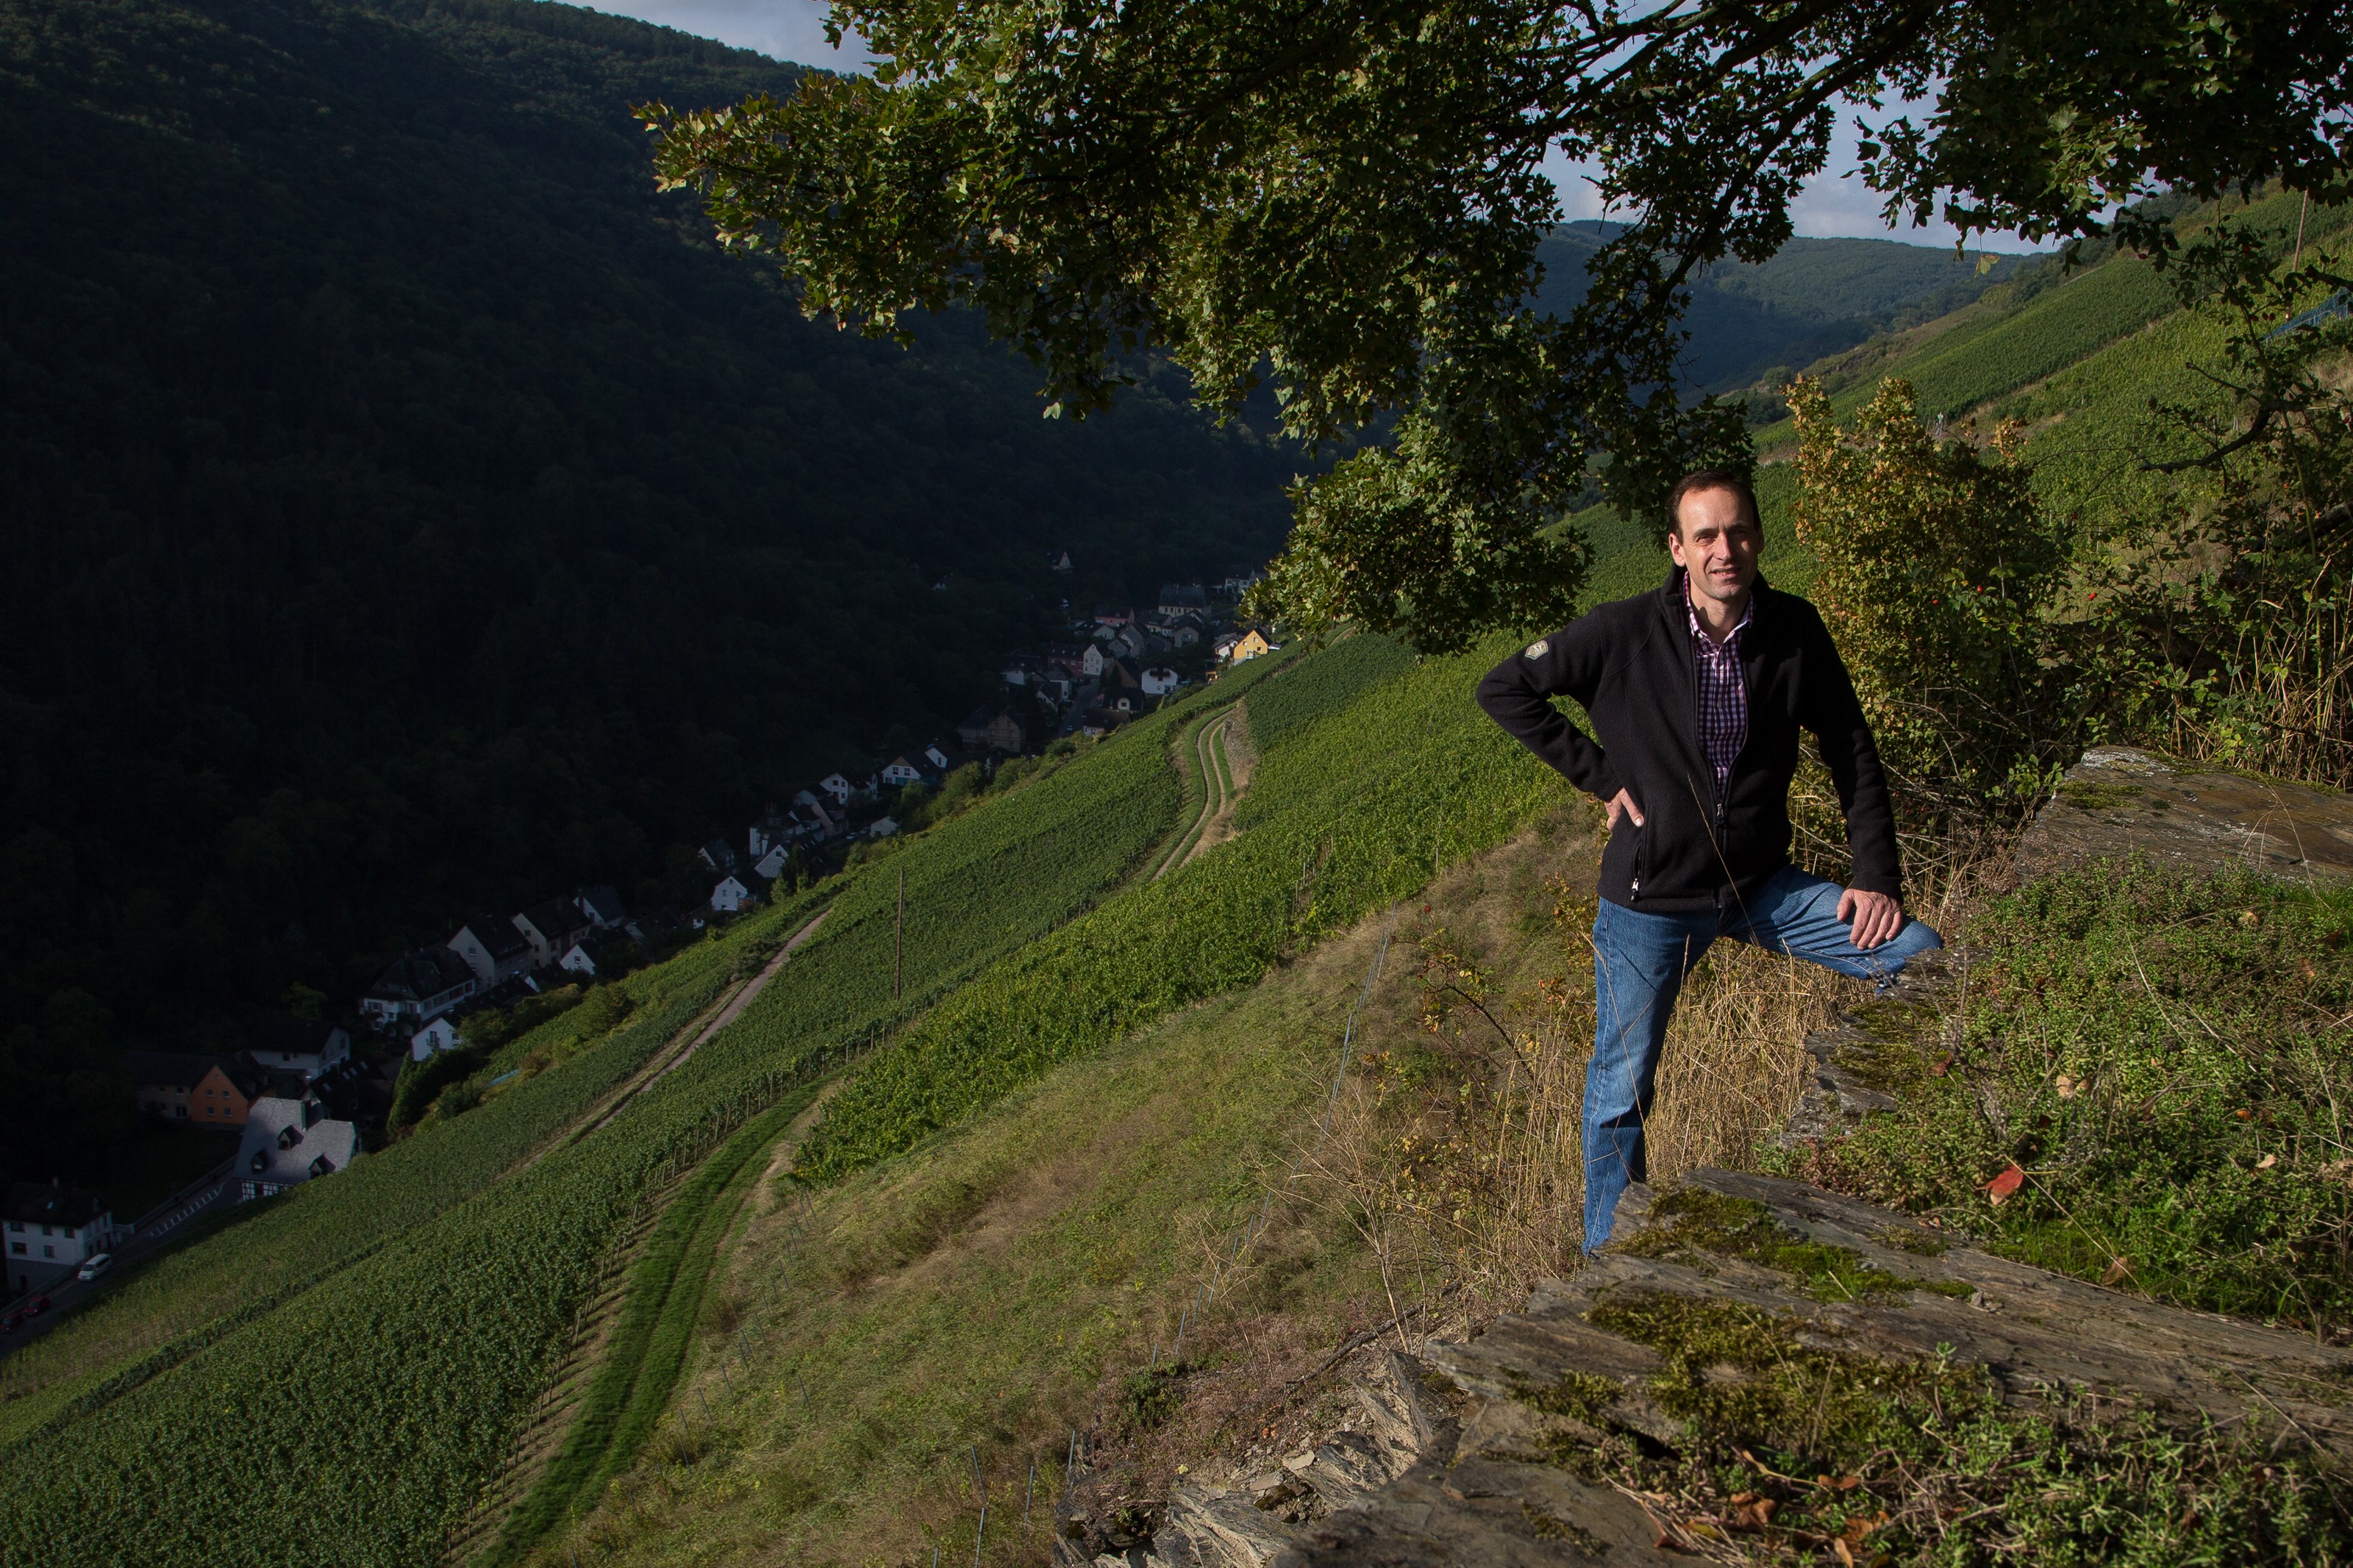 <p>Jochen og familien jobber med en rekke spennende vinmarker i Mittelrhein, og det letteste er &aring; dele de opp per vinmark;</p>
<p>&nbsp;</p>
<p>Steeger St. Jost - dette er vinmarken som starter i hagen til familien Ratzenberger, og g&aring;r rett opp de bratte &aring;ssidene. Den stiger 80 h&oslash;ydemeter rett opp, og har en sydvendt eksponering. Jordsmonnet er dominert av kalkskifer og litt sand. Det er vanskelige forhold med en del erosjon. Og etter 2003 &aring;rgangen fikk de lov &aring; installere vanningssystem her, som brukes hvis det blir alt for varm og t&oslash;rt.</p>
<p>&nbsp;</p>
<p>Wolfsh&ouml;hle - 60-65 grader helning med stupbratte sydvendte vinmarker er arnestedet til den rikeste vinen til Ratzenberger, den er fortsatt floral og line&aelig;r, men med et m&oslash;rkere og mer variert jordsmonn, s&aring; blir vinene herifra litt kraftigere og mer lagrinskrevende. Det er ogs&aring; skifer og leire her, men ogs&aring; parseller med bl&aring; og m&oslash;rk skifer.&nbsp;</p>
<p>&nbsp;</p>
<p>Schloss F&uuml;rstenberg - det nyeste tilskuddet, en 10 hektar stor vinmark som familien har re-etablert med terrasser som i gamle dager. Det er samtidig etablert et stort og langsiktig prosjekt her, sammen med Universitet i Geisenheim, som skal se p&aring; biodiversitet, kloner m.m. vinmarken er kj&oslash;ligere en Steeger St. Jost og Wolfsh&ouml;hle, og vinene er mer urtete og livlige herifra. Med tid vil vi kunne se mer dybde og intensitet, n&aring;r Jochen og familien har f&aring;tt arbeidet vinmarkene i flere &aring;r.&nbsp;&nbsp;</p>